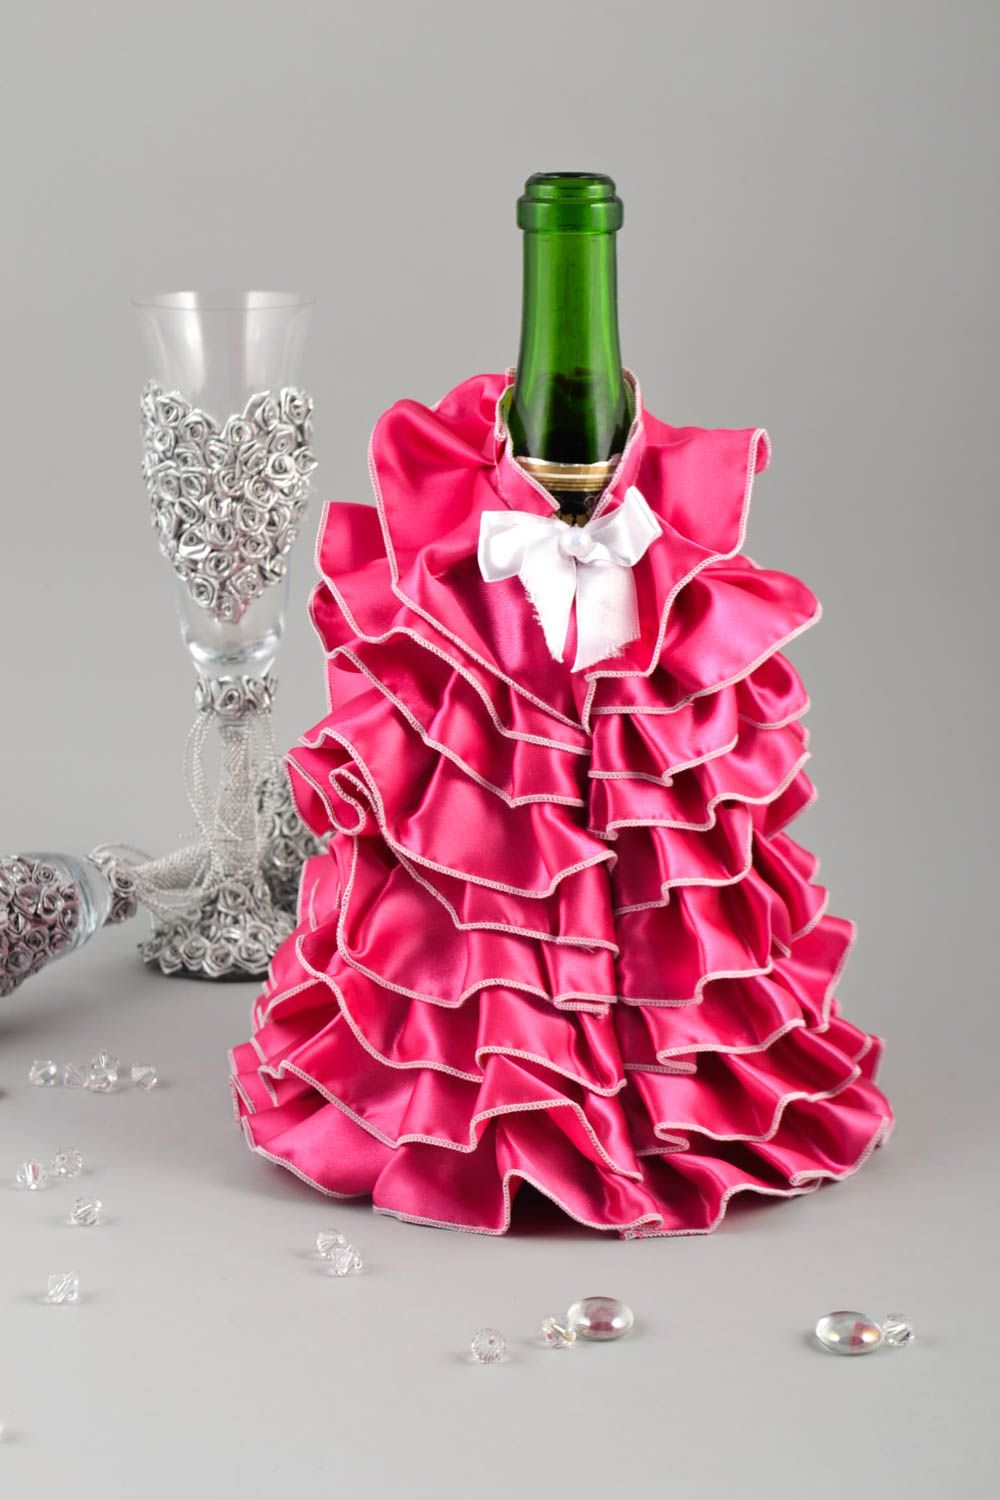 Чехол для бутылки ручной работы розовая одежда для бутылки аксессуар для дома фото 1